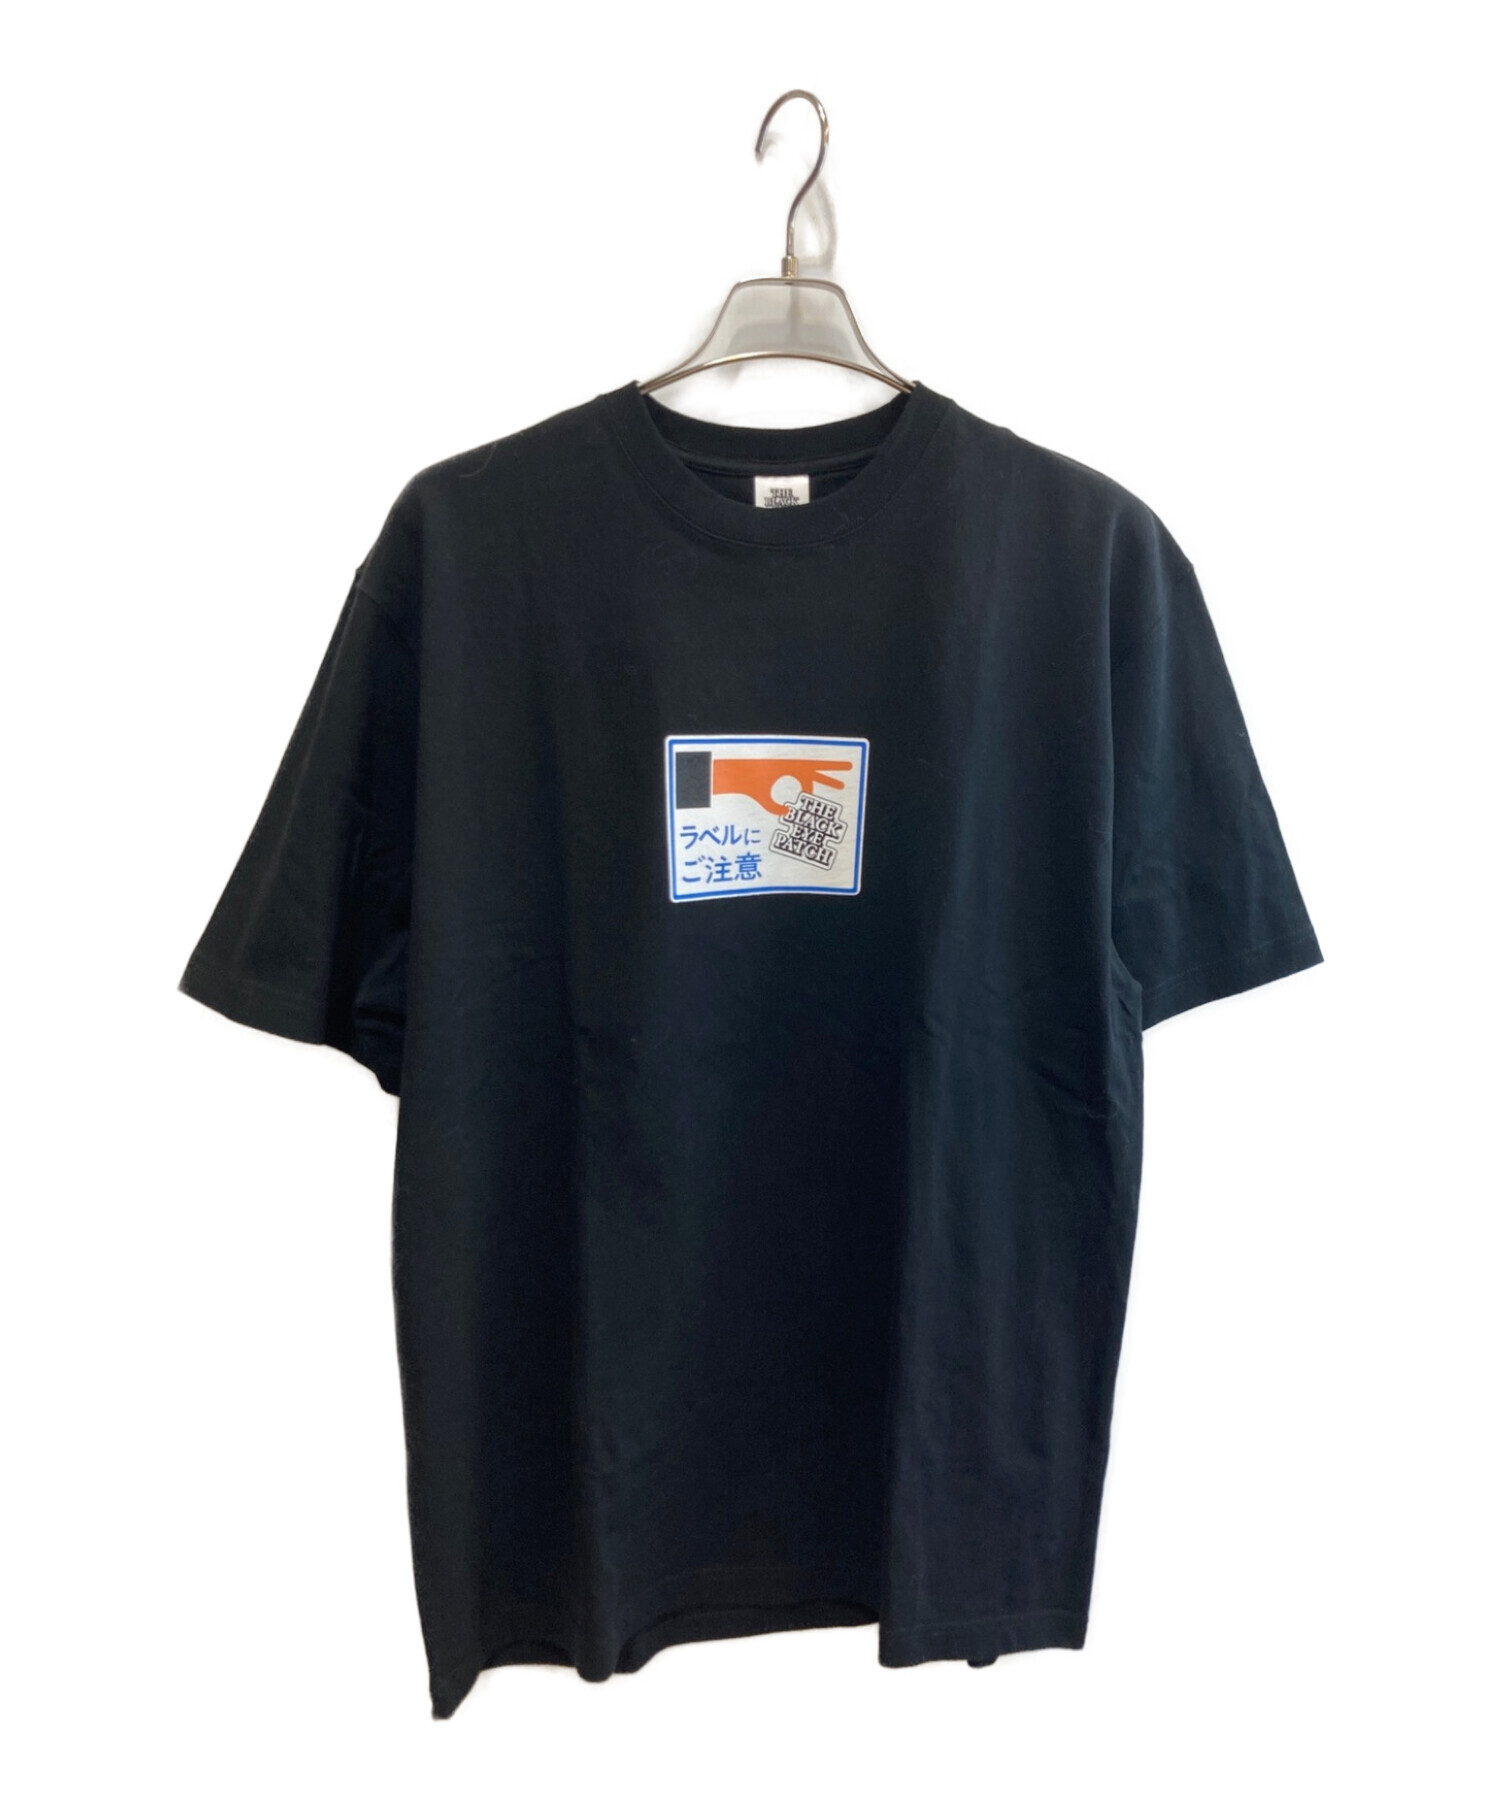 BlackEyePatch (ブラックアイパッチ) Tシャツ ブラック サイズ:XL